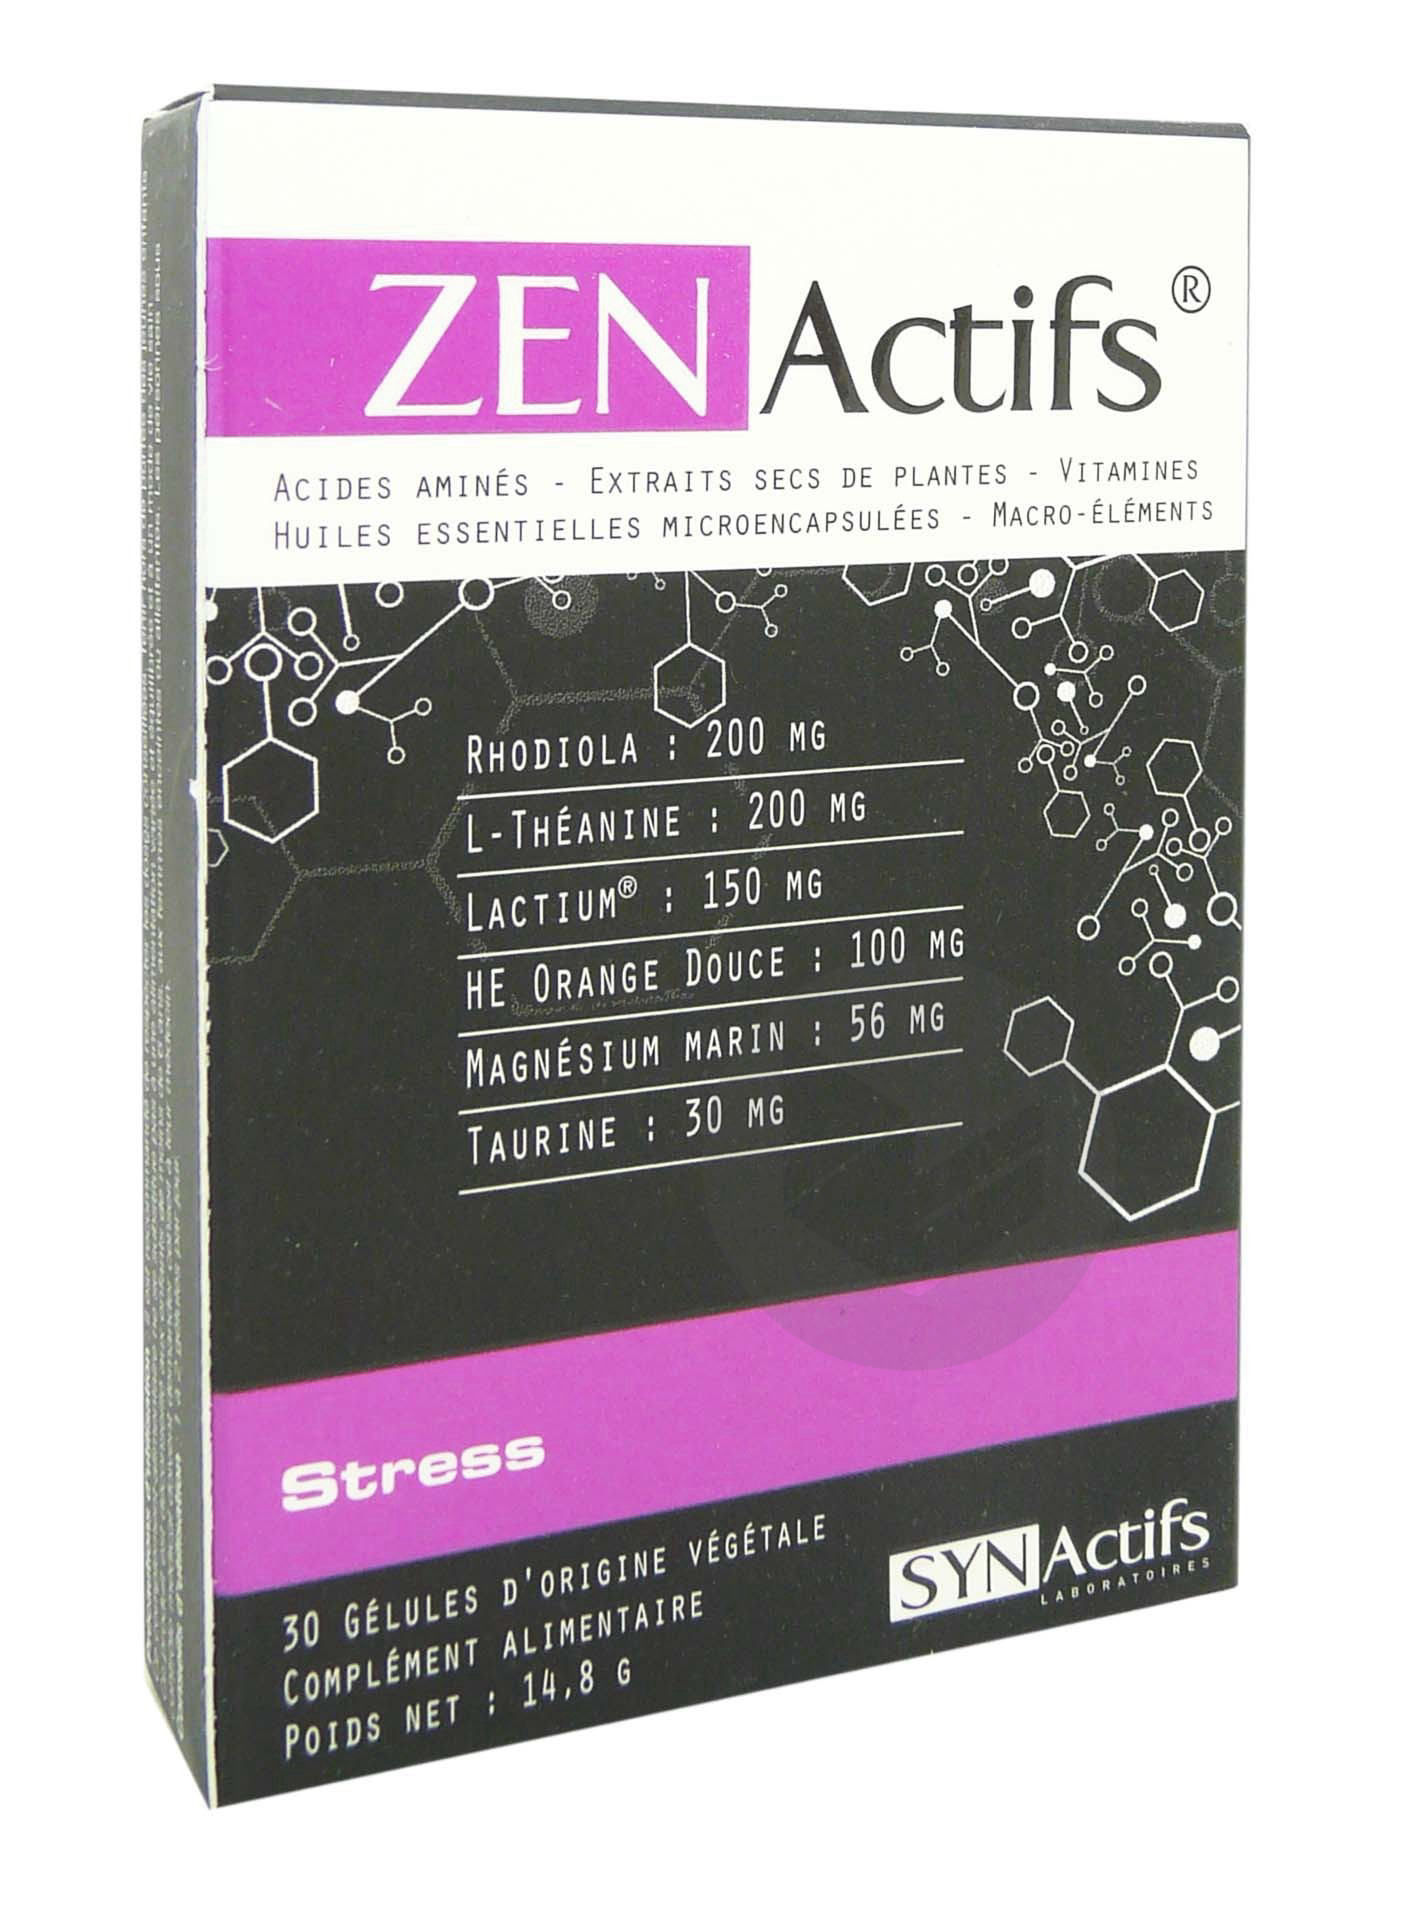 SYNACTIFS ZENACTIFS 30 gélules